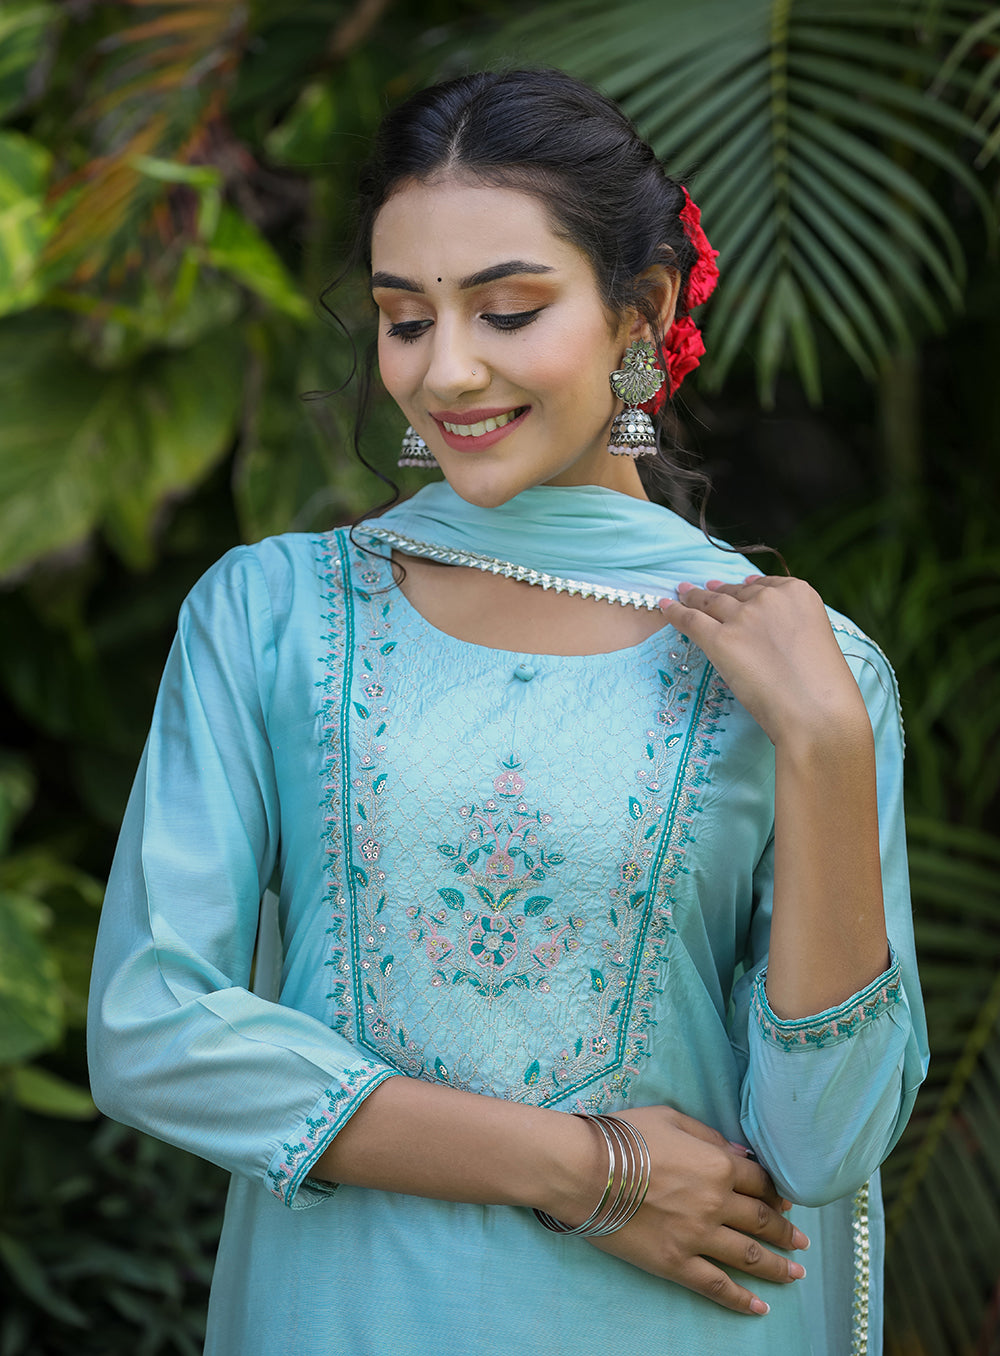 Buy Green Silk Sharara Suit For Women | Best Silk Sharara Dress Online